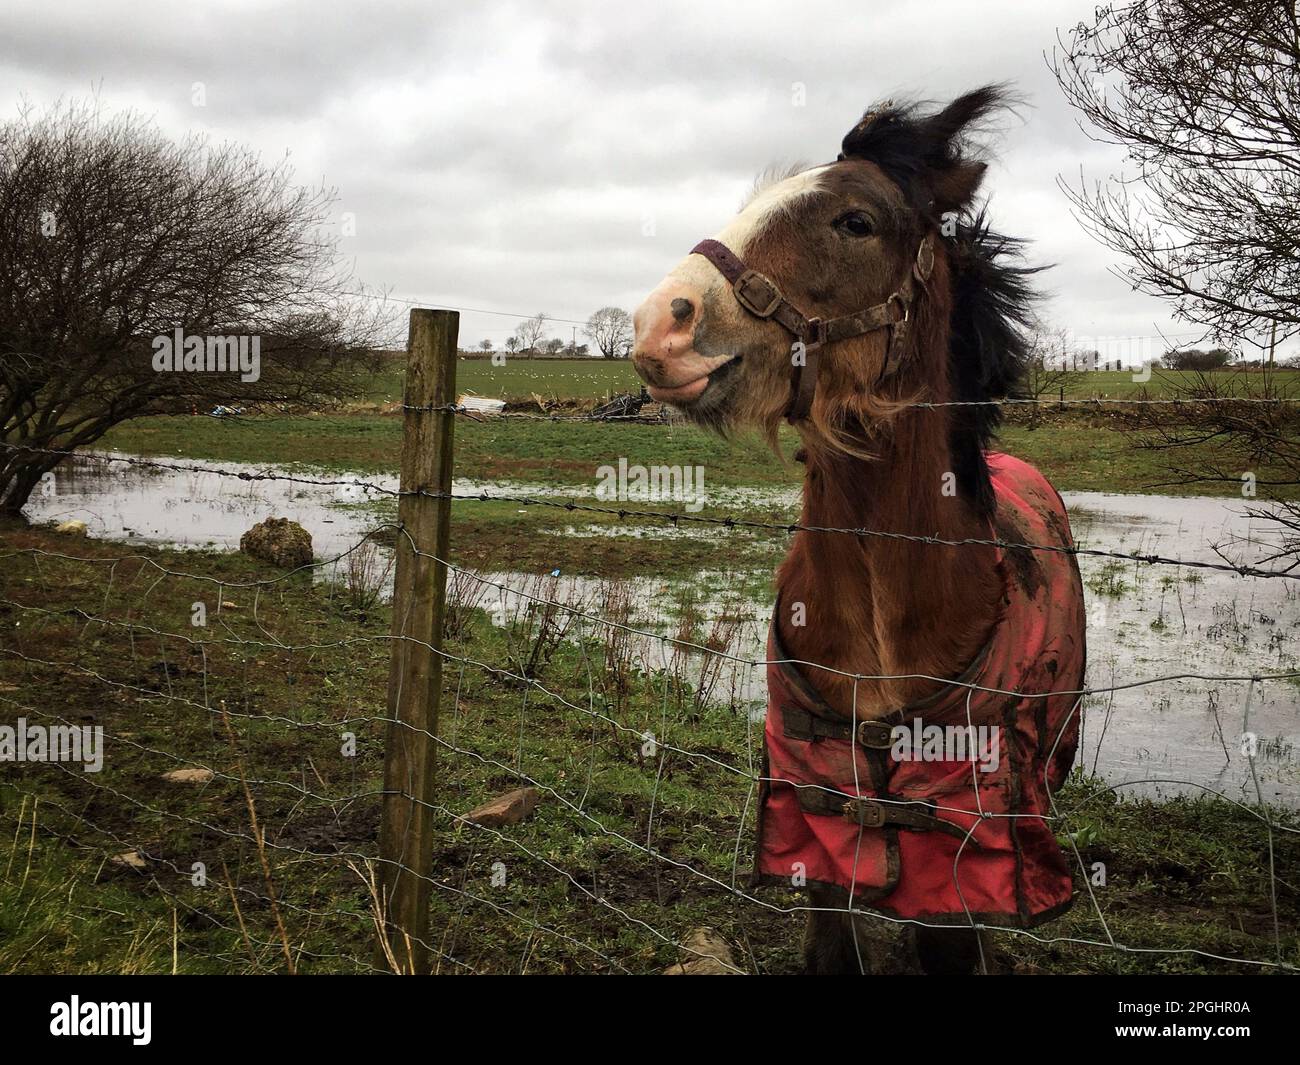 imagen en color de un caballo con la lengua fuera Foto de stock